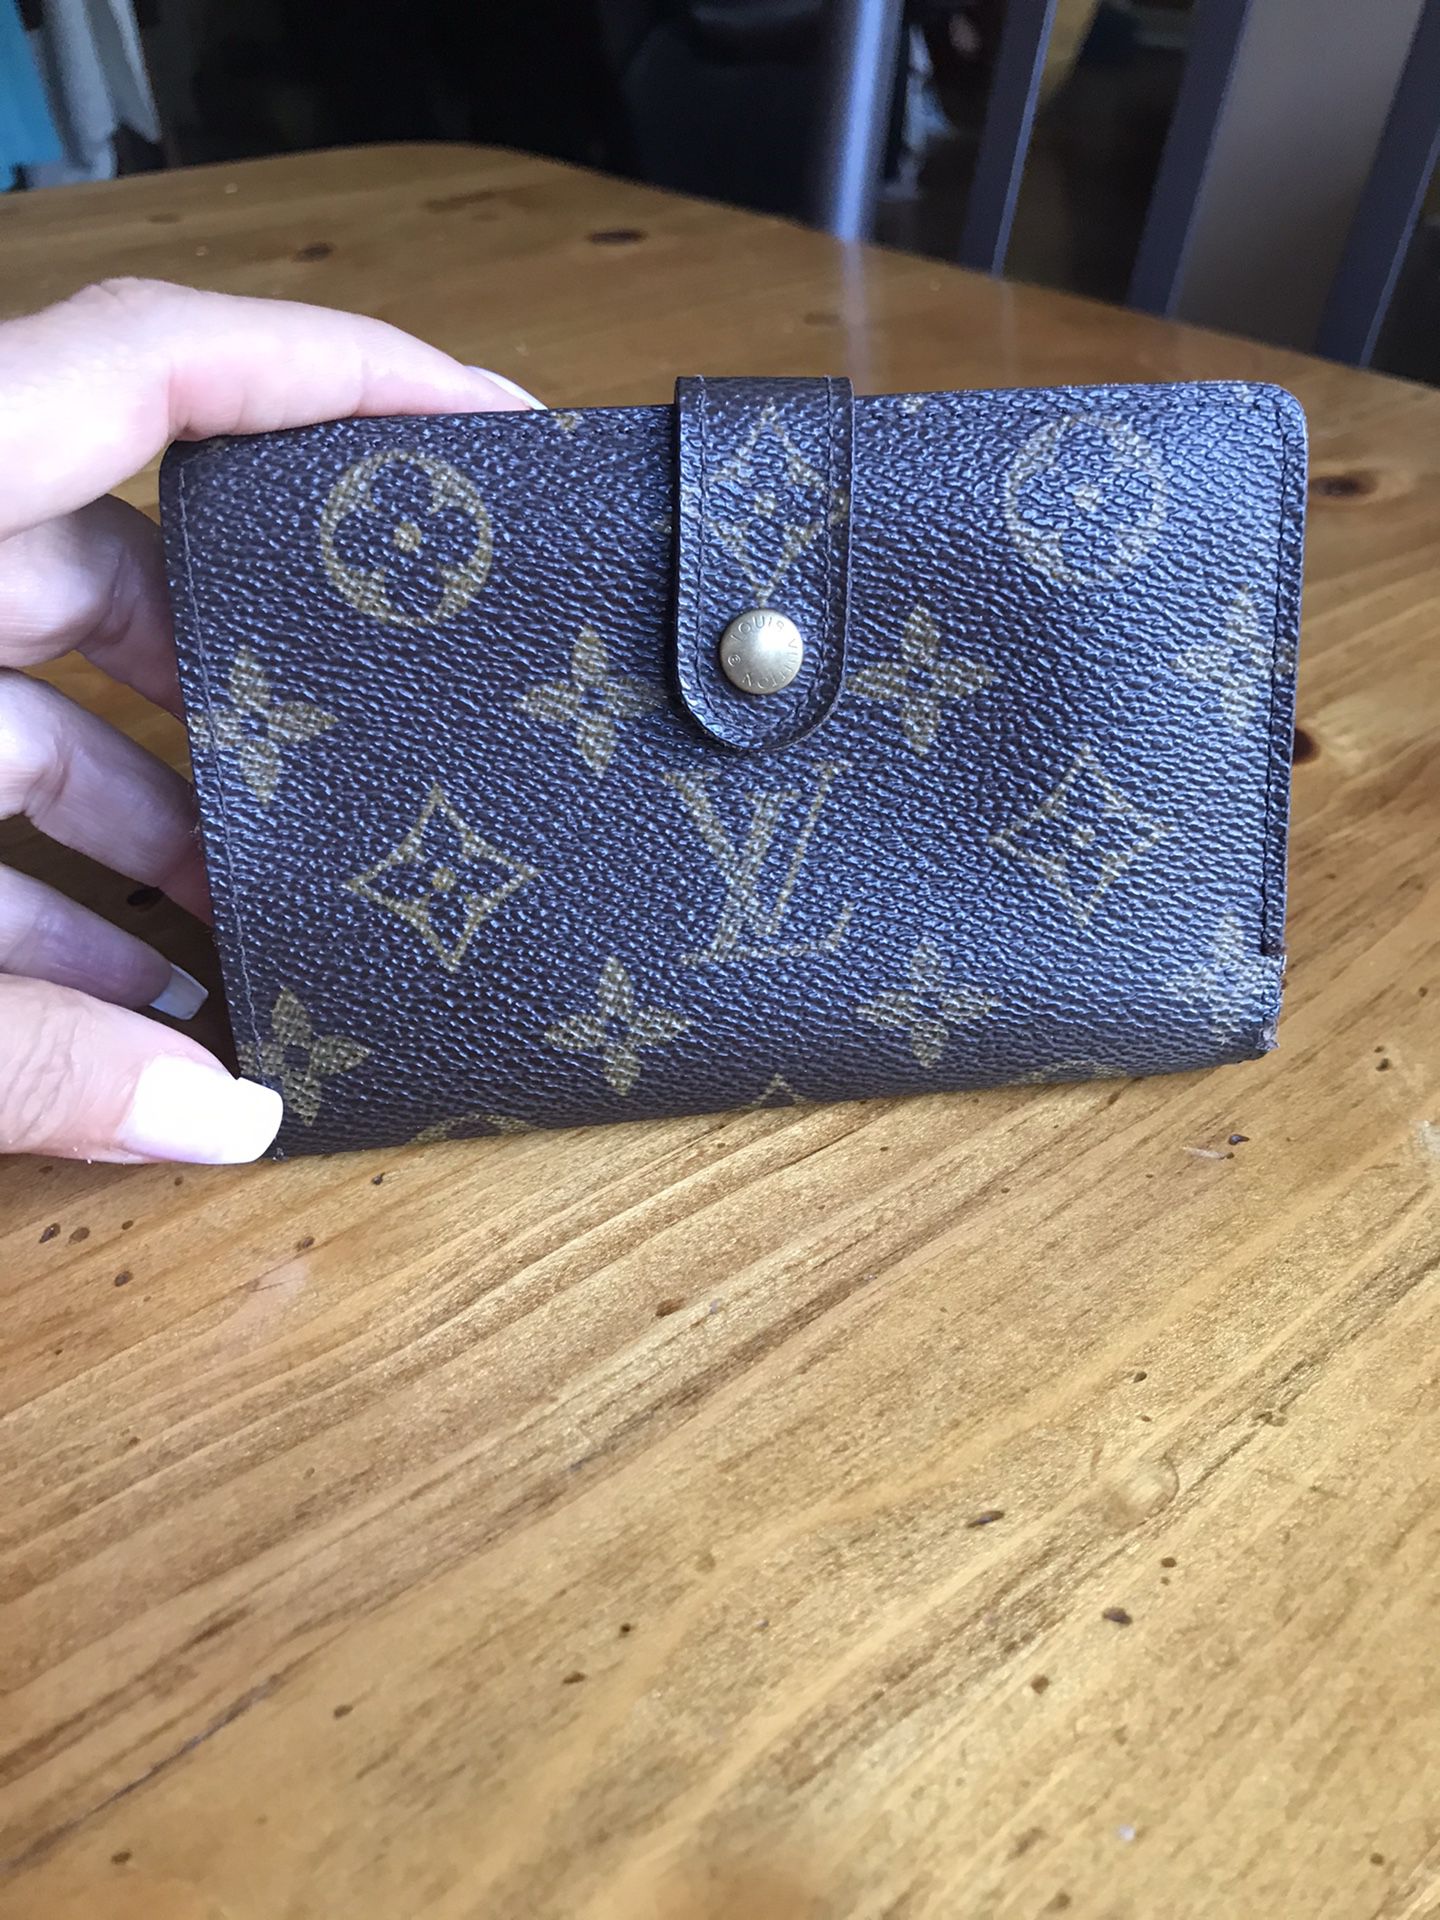 Chanel Cambon Bifold Wallet for Sale in Phoenix, AZ - OfferUp